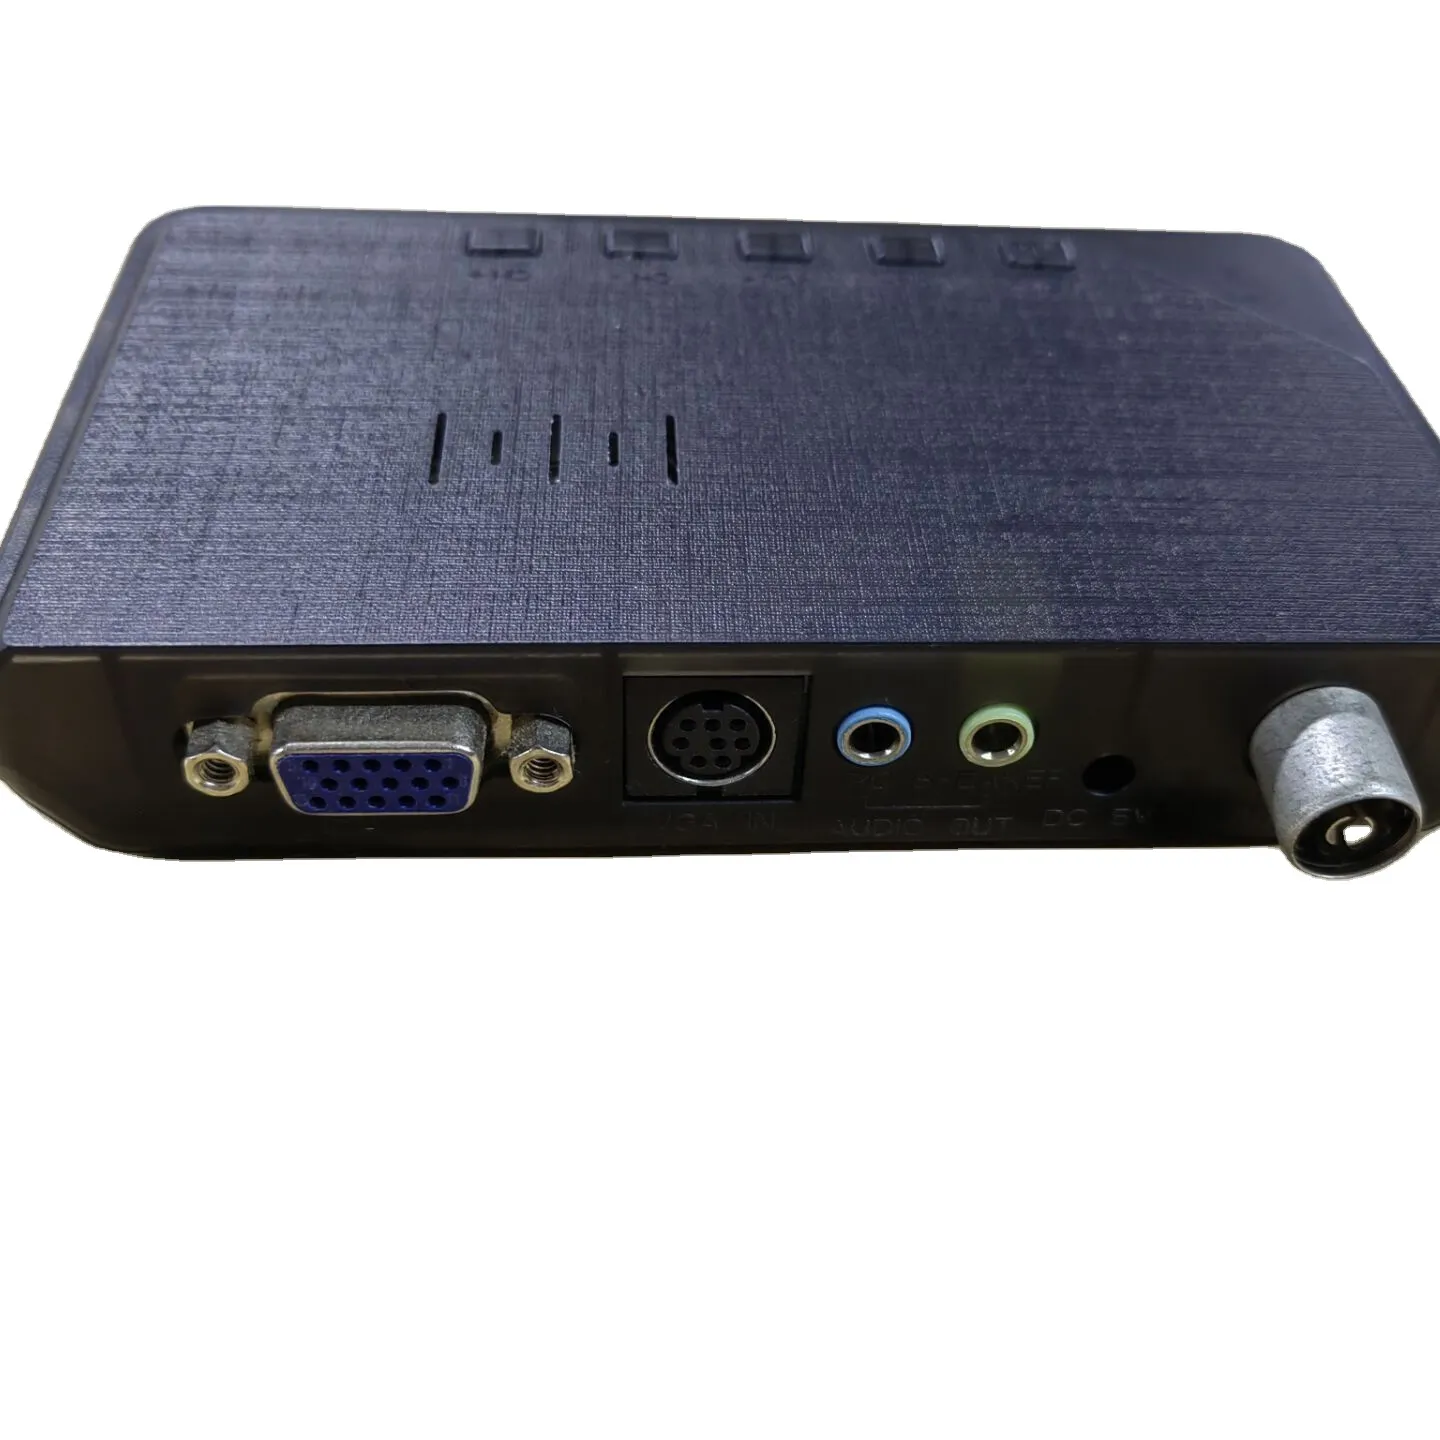 Televisi rumah audio video & Aksesori eksternal Lcd Vga Pc Monitor Tv Tuner Built-in Speaker Gadmei XGA kotak TV